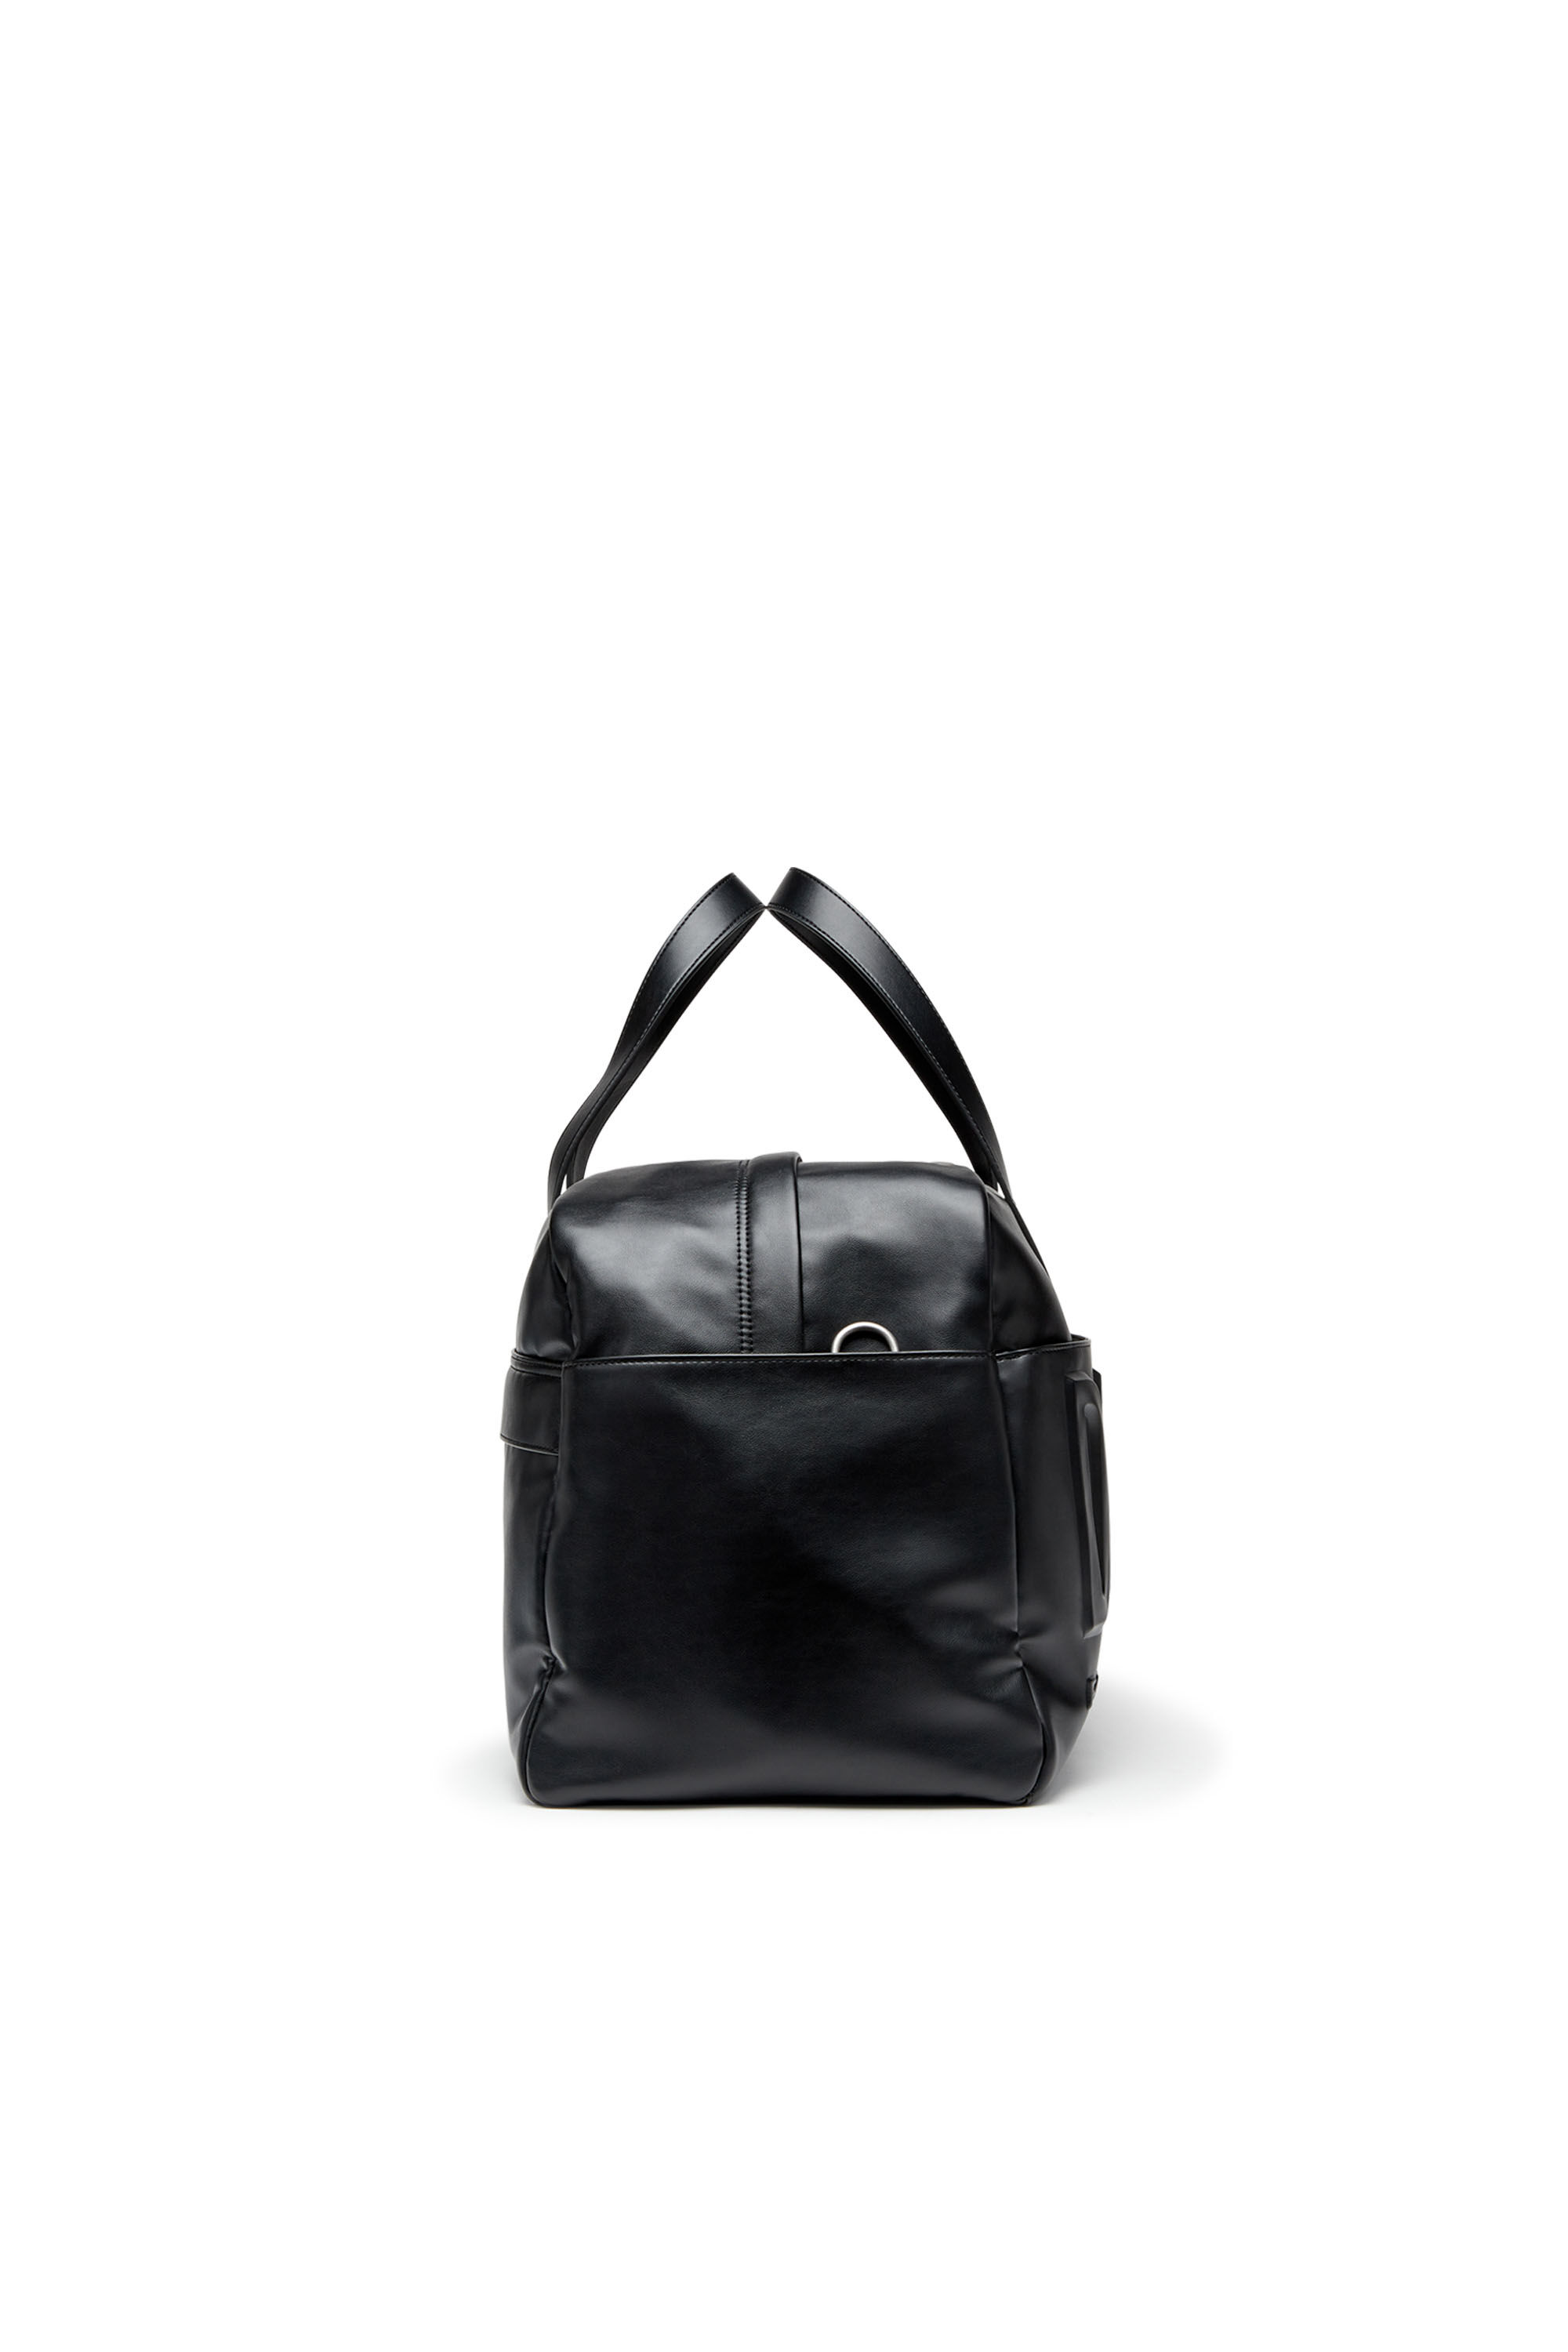 DSL 3D DUFFLE L X Dsl 3D Duffle L X Travel Bag - Duffle bag with 